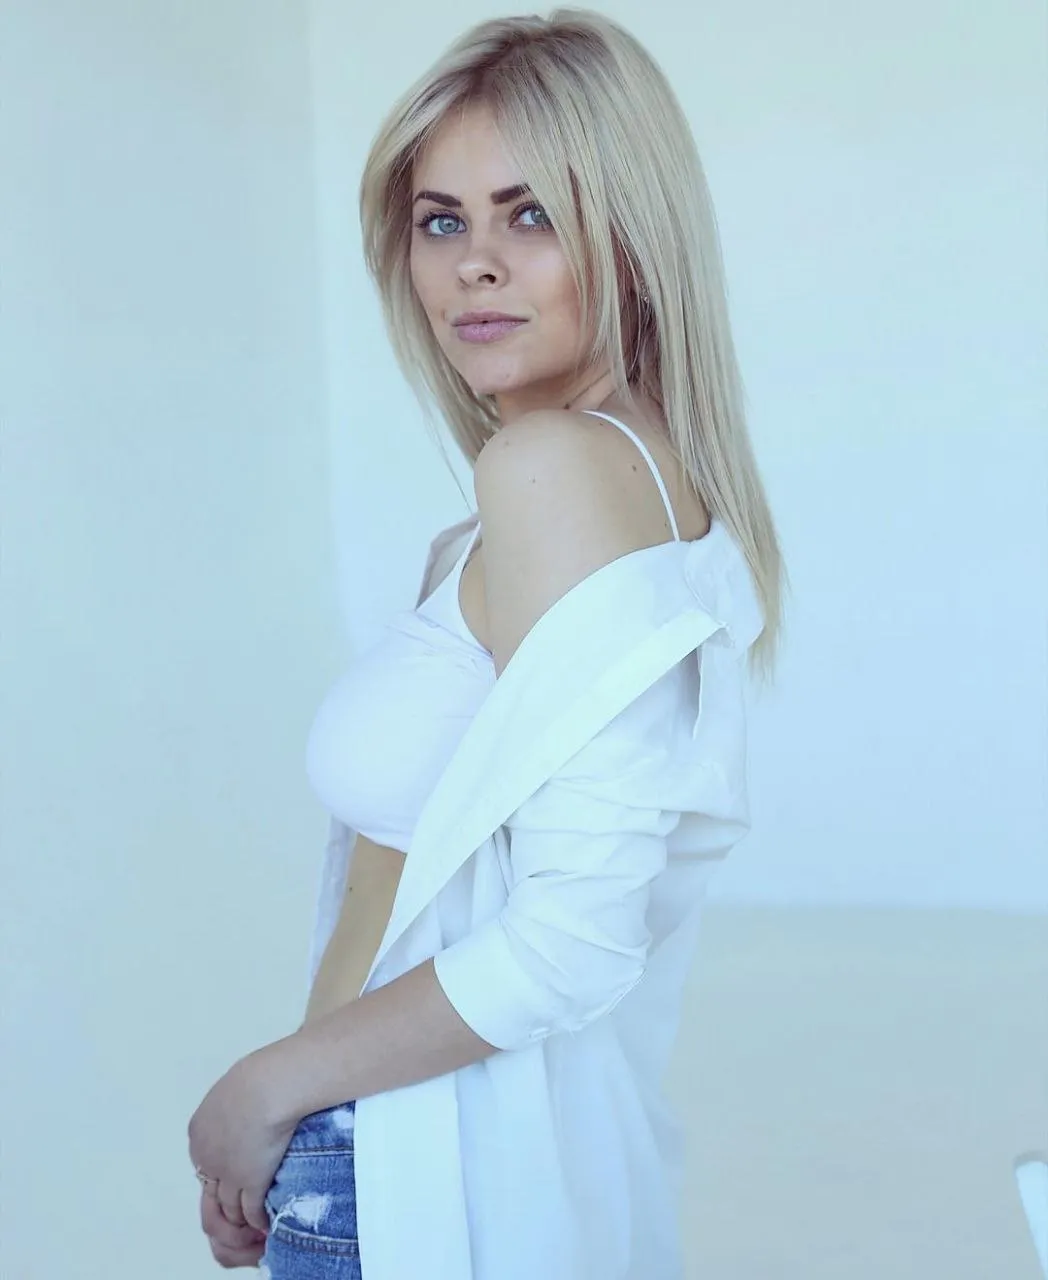 Anastasiia ukraine bride agency